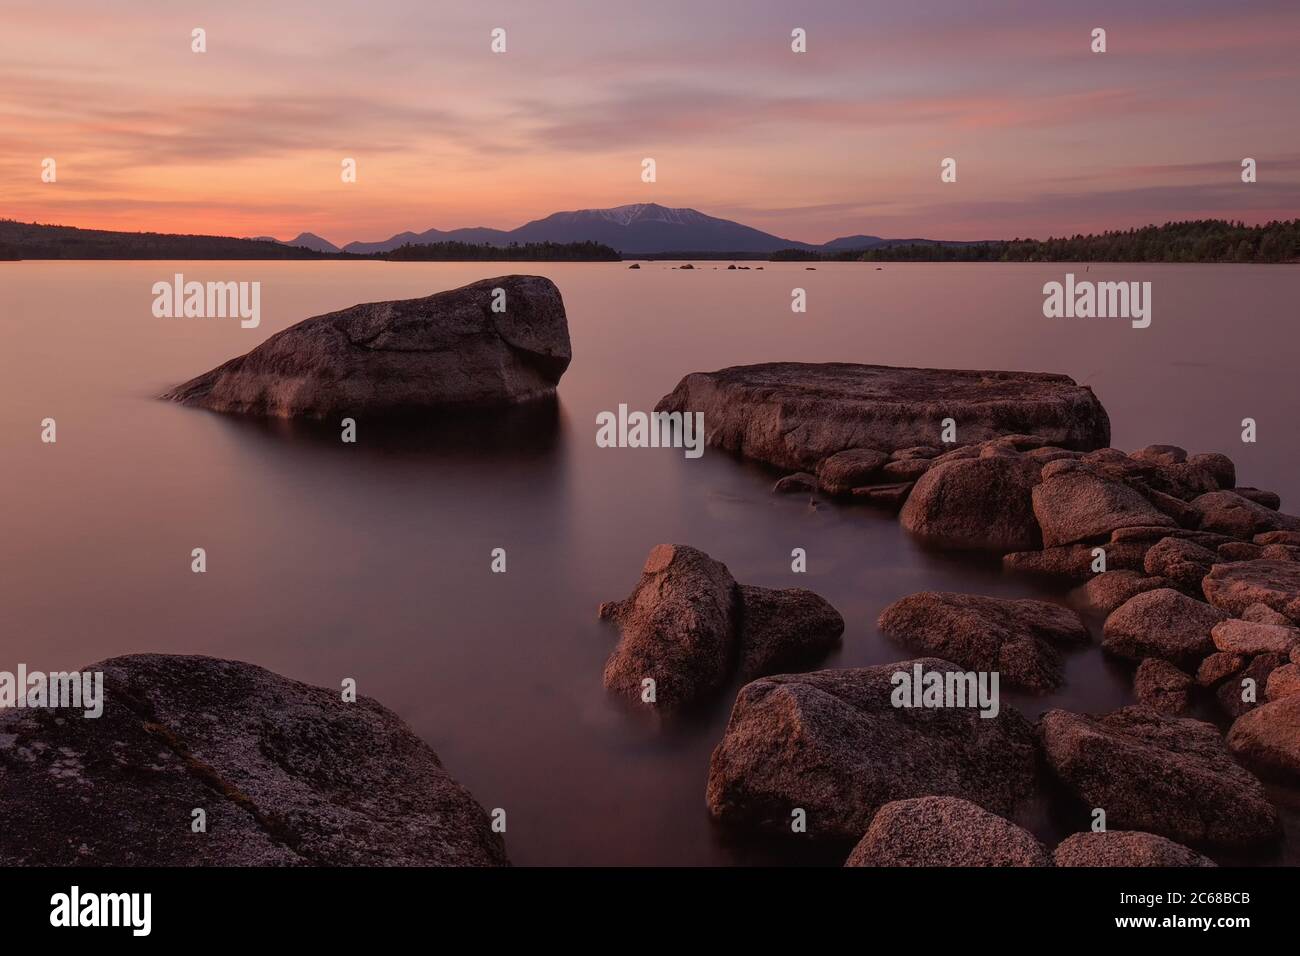 Ambajejus Lake at sunset. Stock Photo